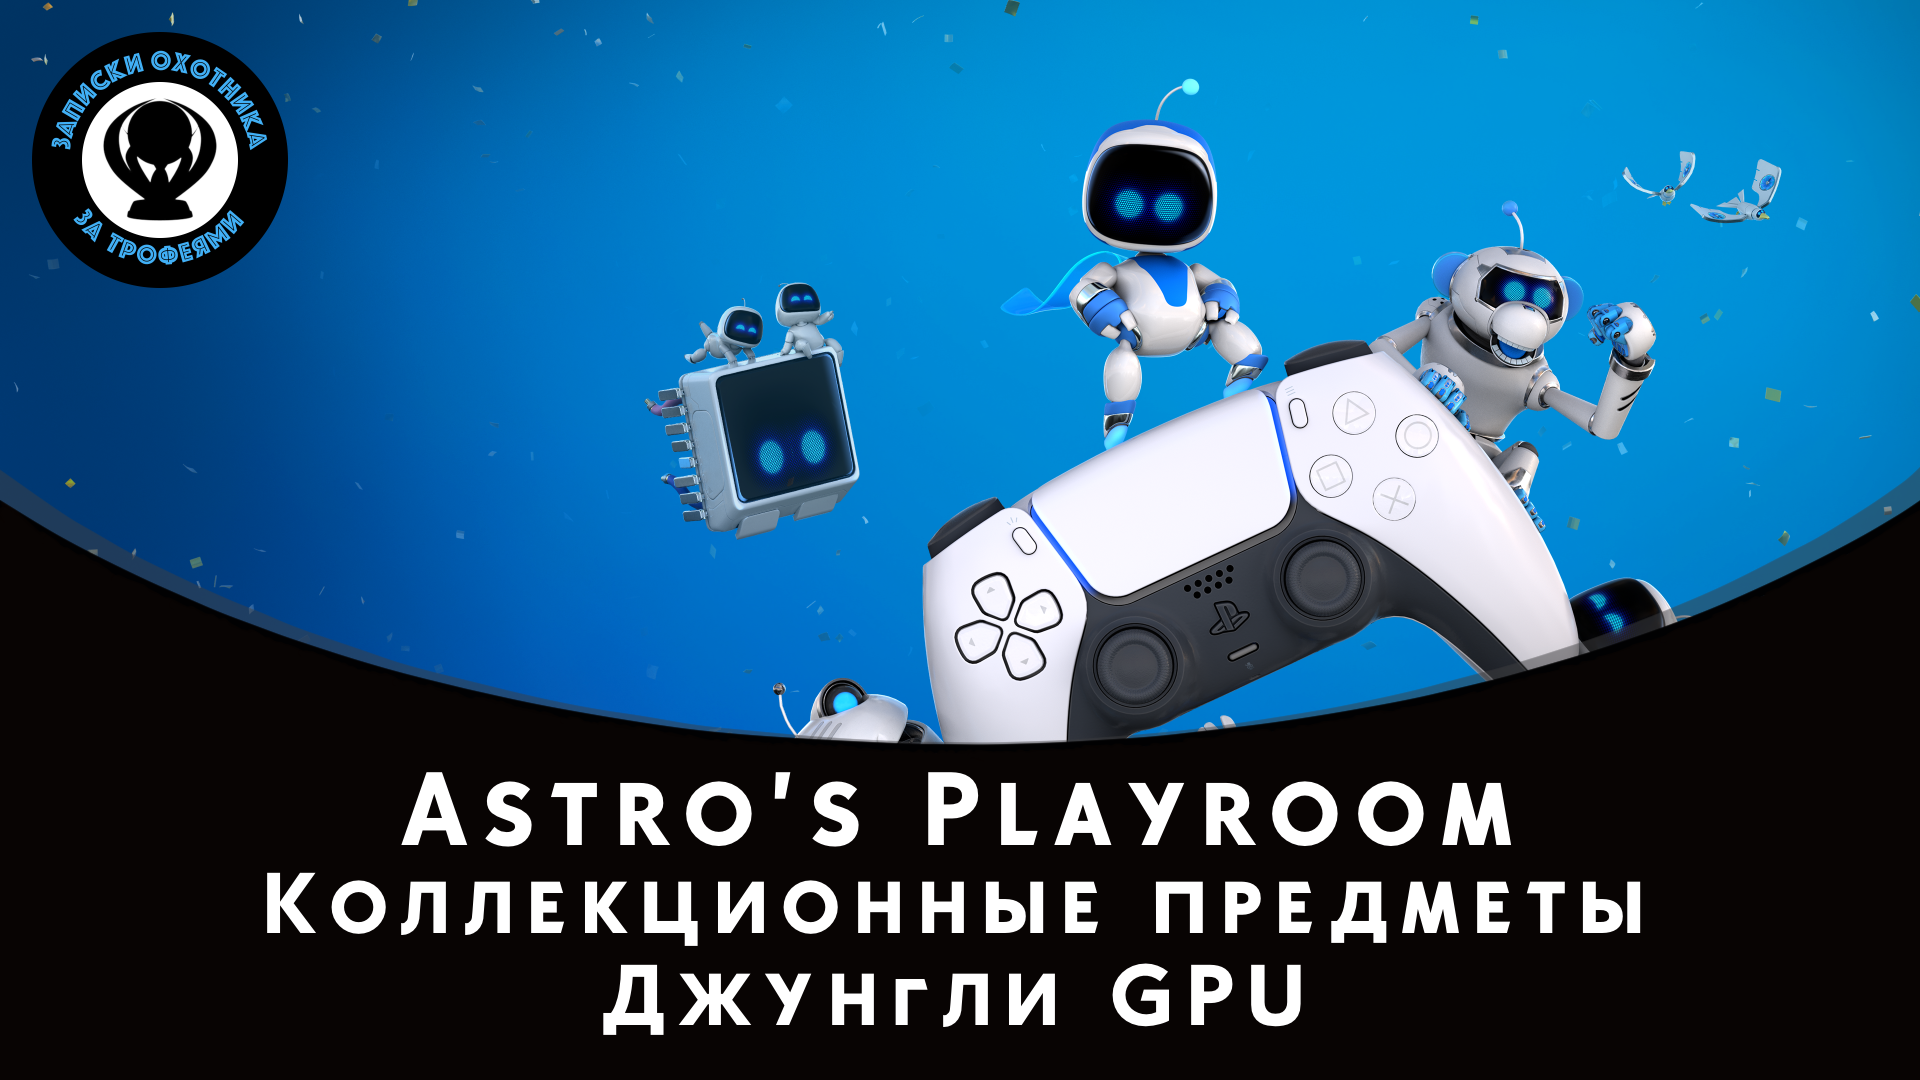 Astro’s Playroom — Все коллекционные предметы "Джунгли GPU" (Артефакты и Детали)